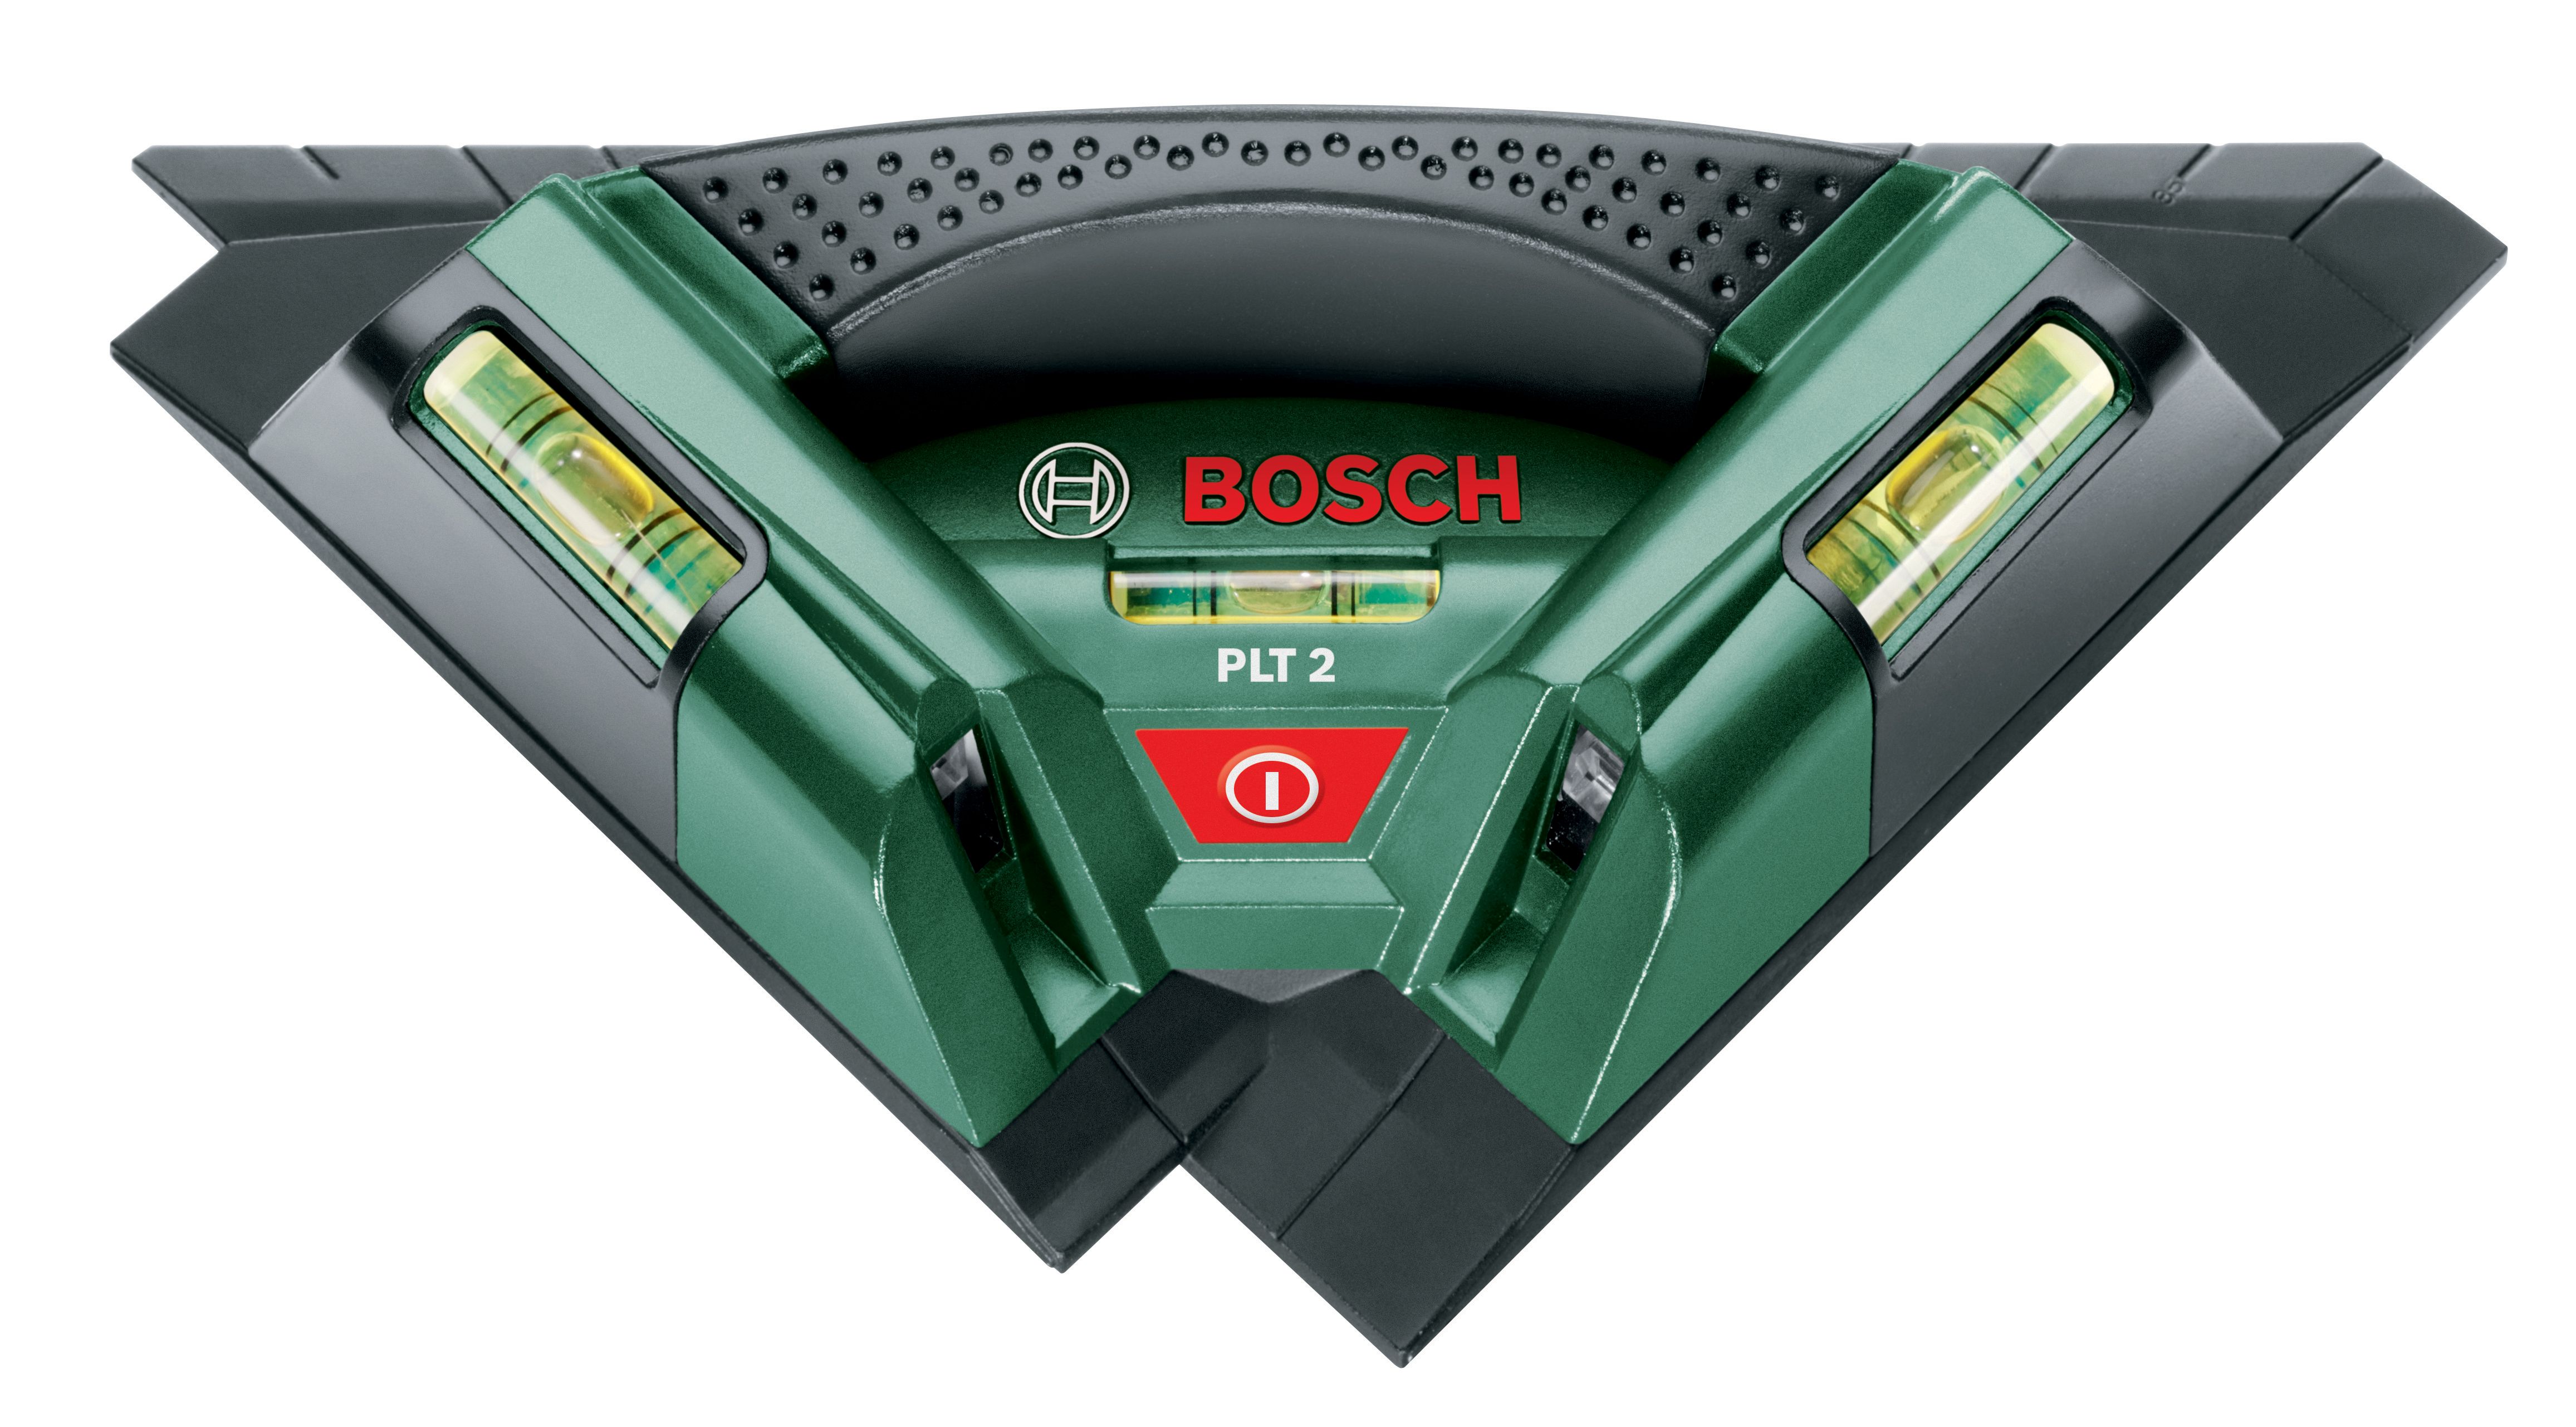 Bosch PLT2 Tile Laser Level